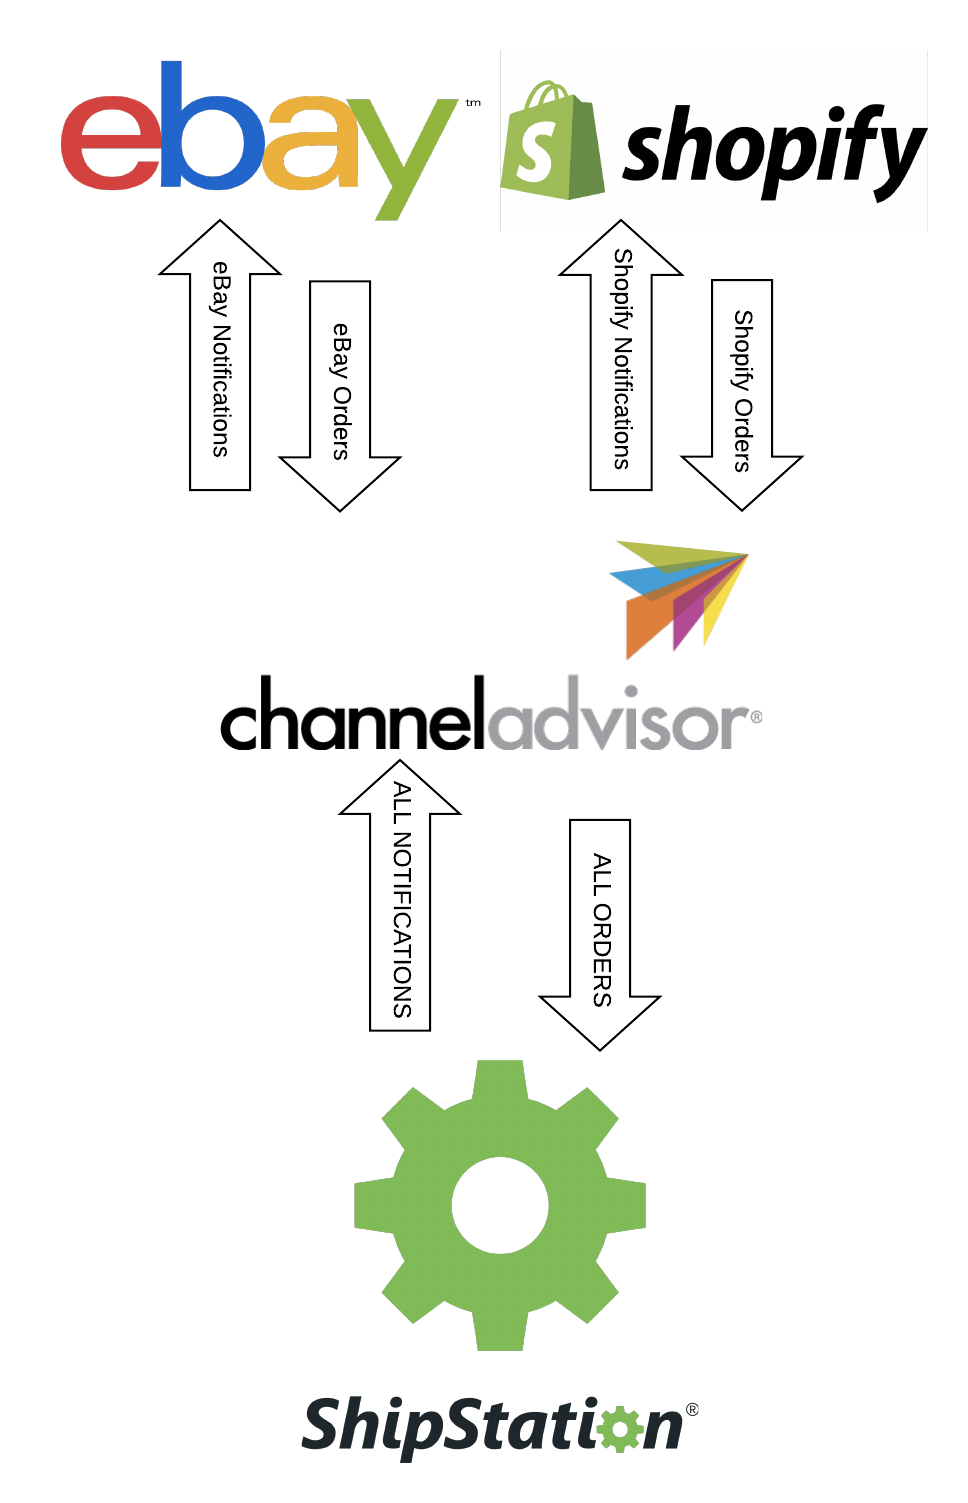 Shop-Aufträge werden zu ChannelAdvisor weitergeleitet und dann zu ShipStation. Die Benachrichtigungen gehen zurück an Channel Advisor, dann an die Shops.